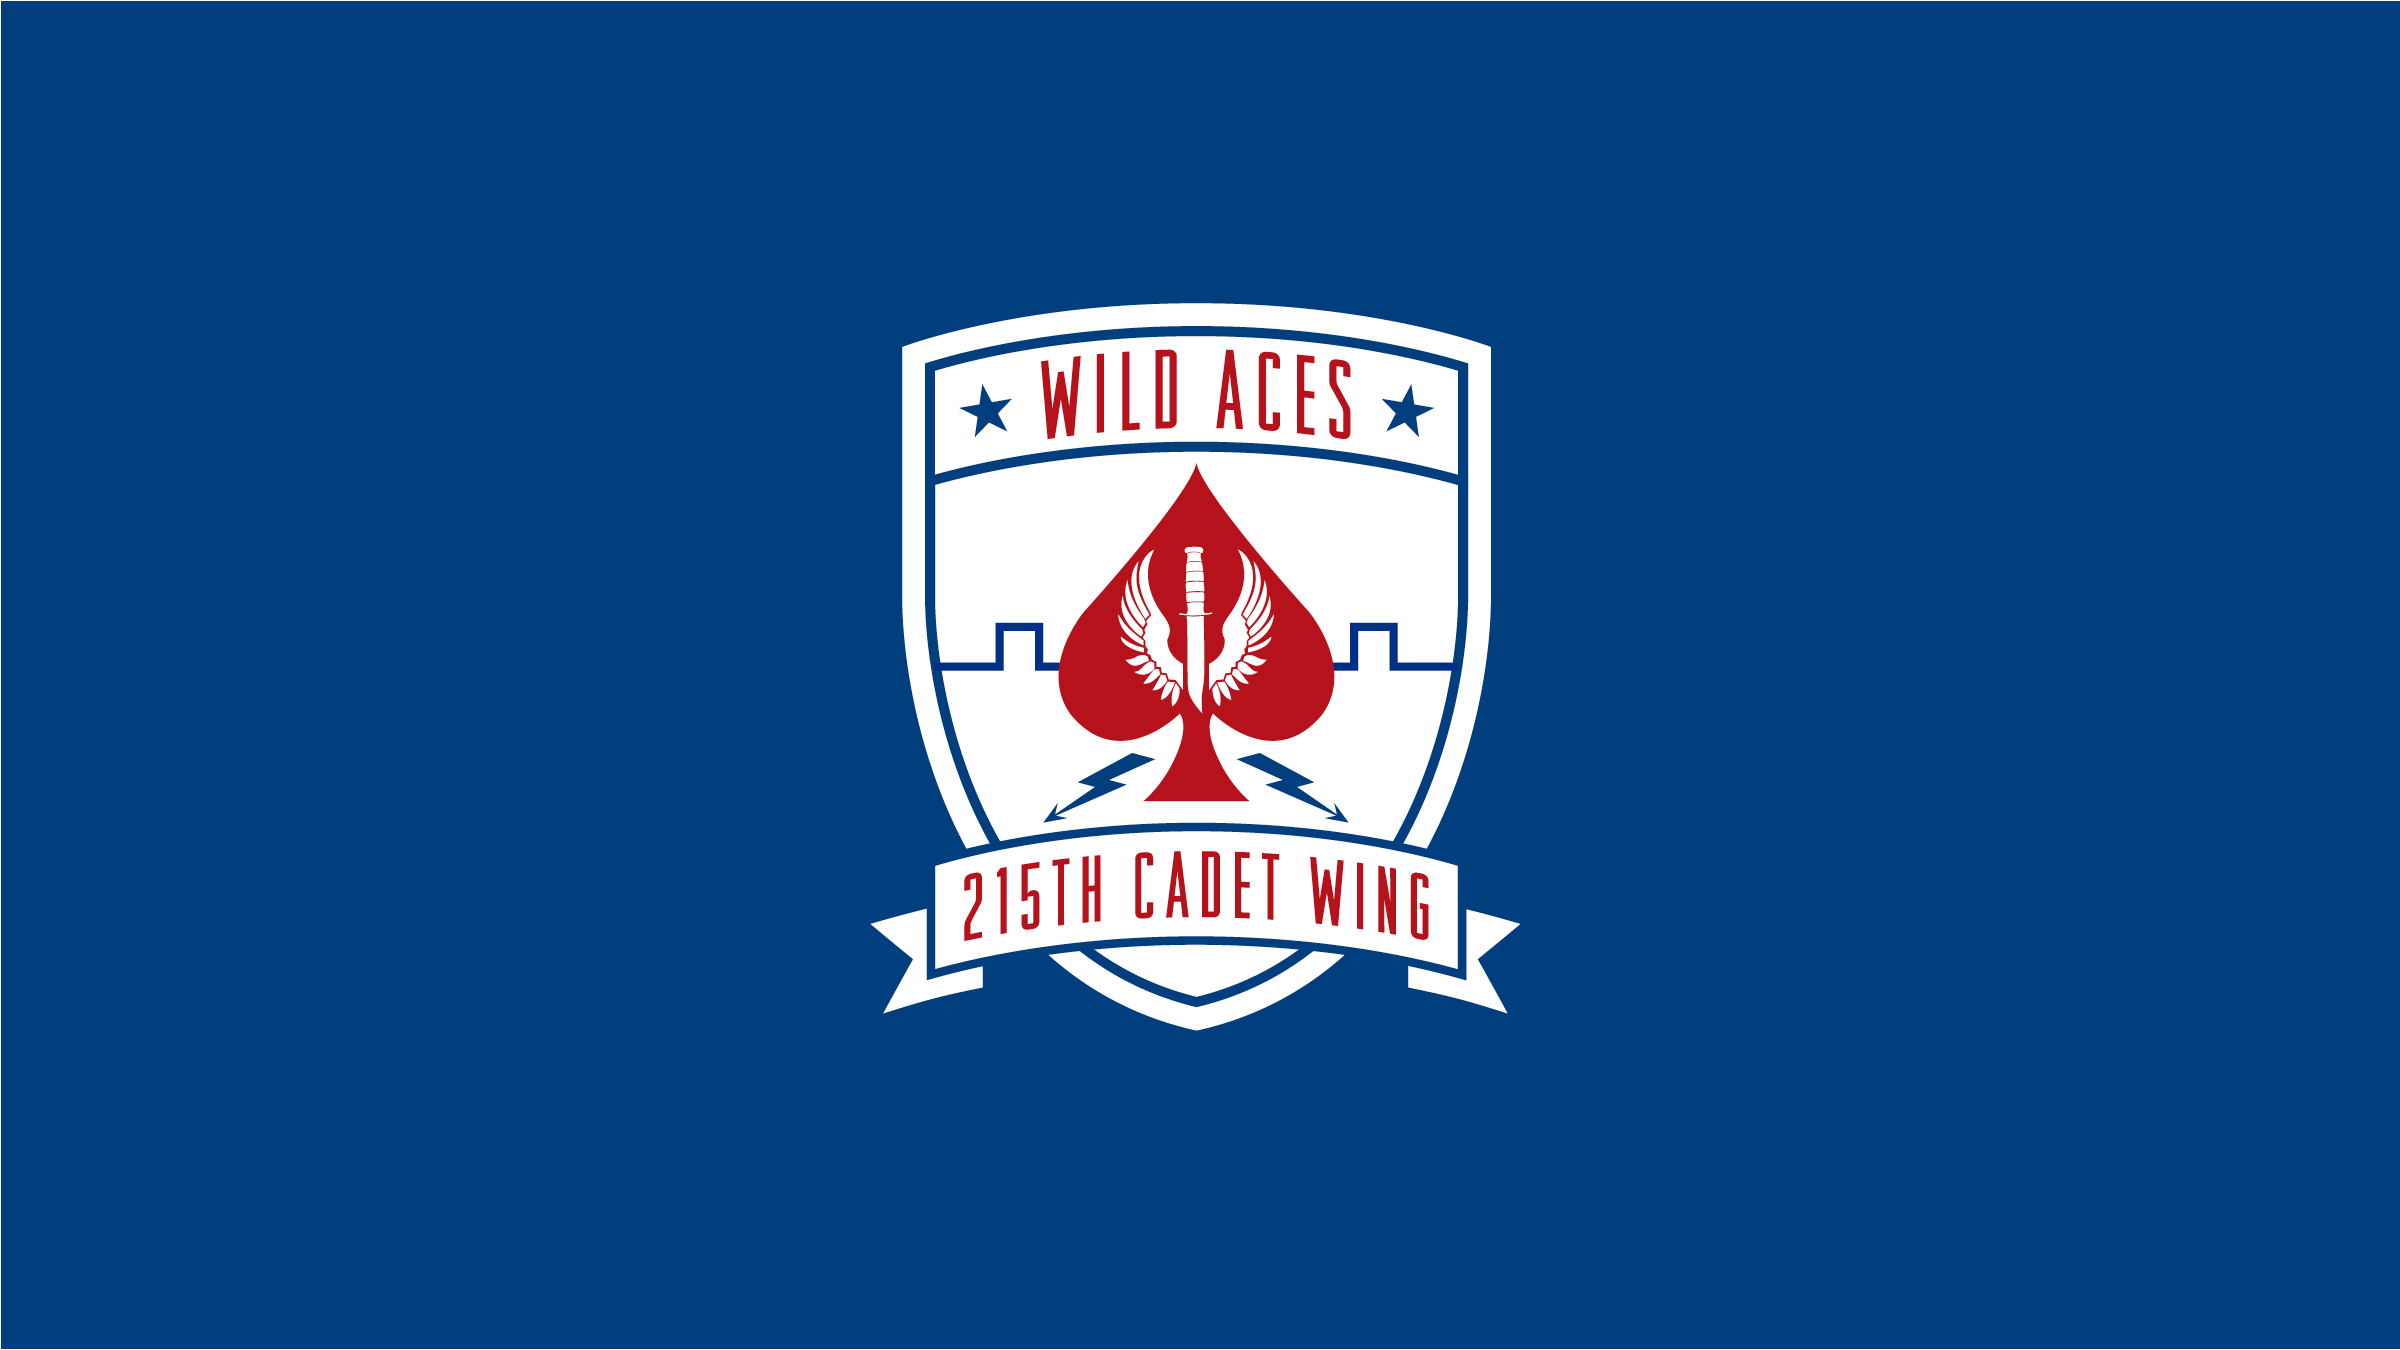 Wild Aces AFROTC Crest (Copy)